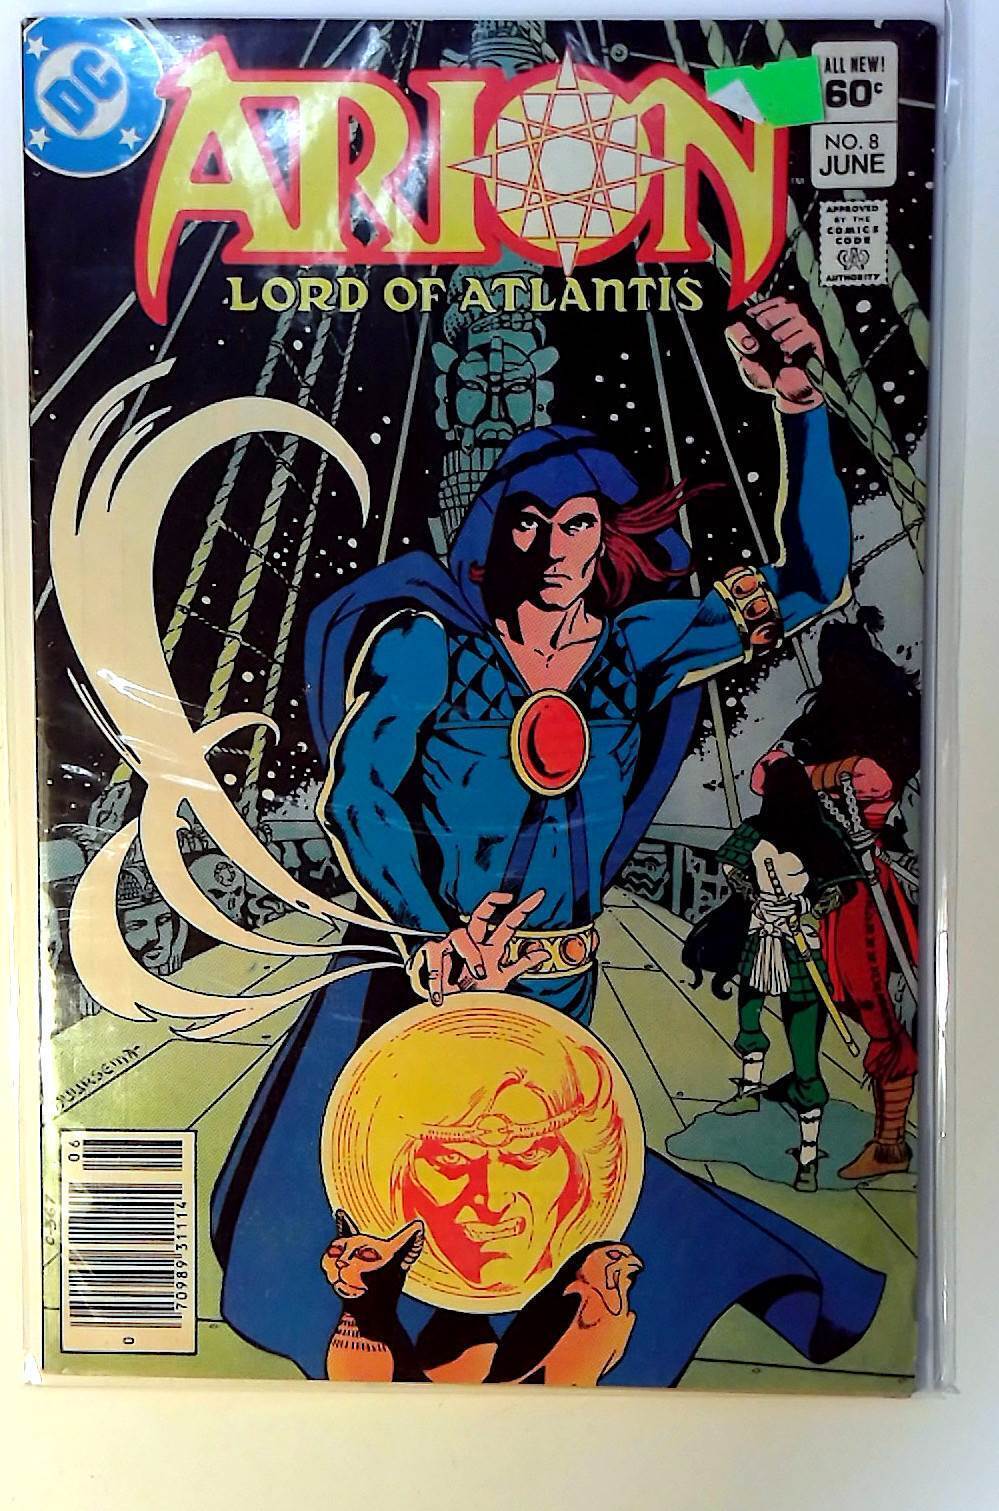 Arion, Lord of Atlantis #8 DC Comics (1983) FN+ 1st Print Comic Book